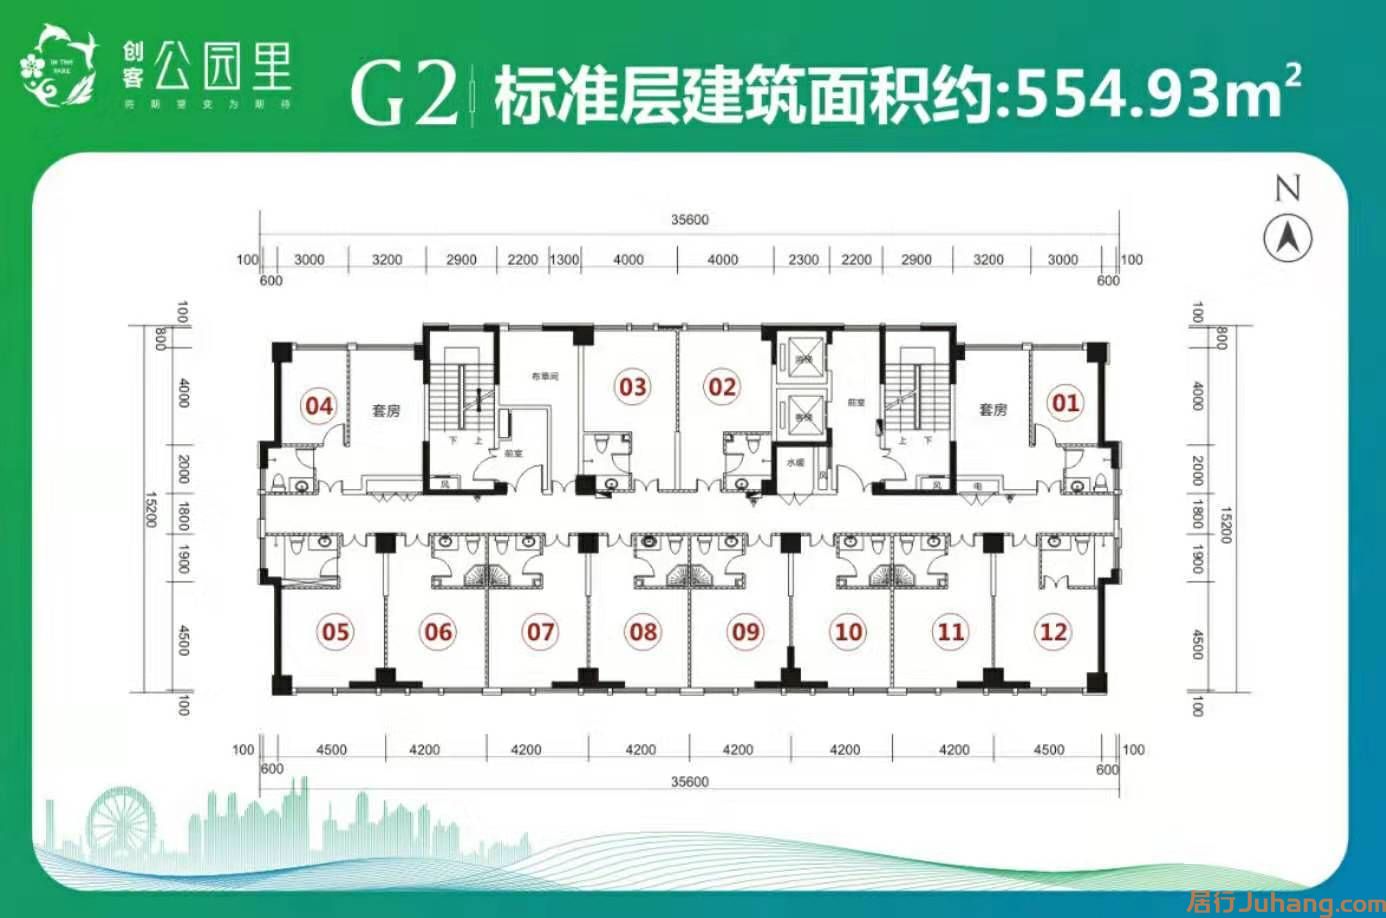 G2公寓平面图